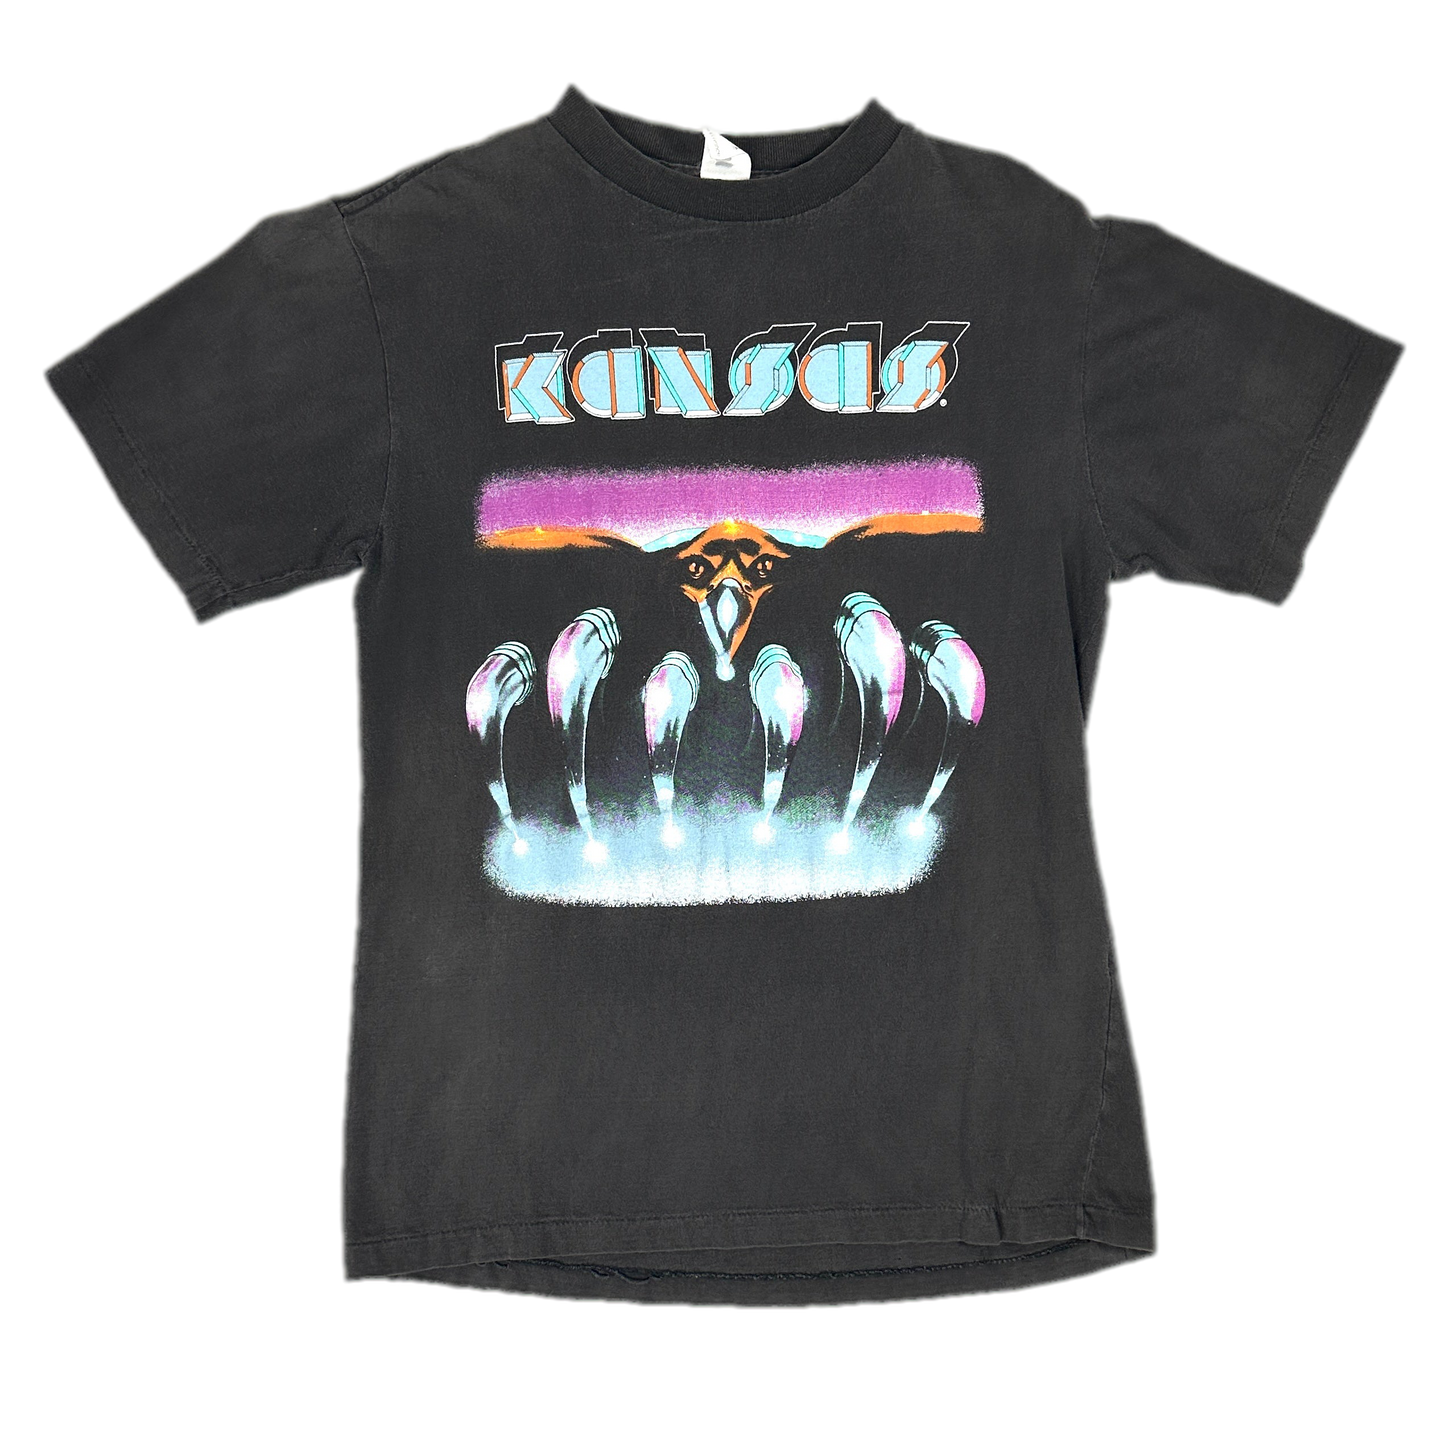 '91 Kansas Tour Black Music T-Shirt sz S